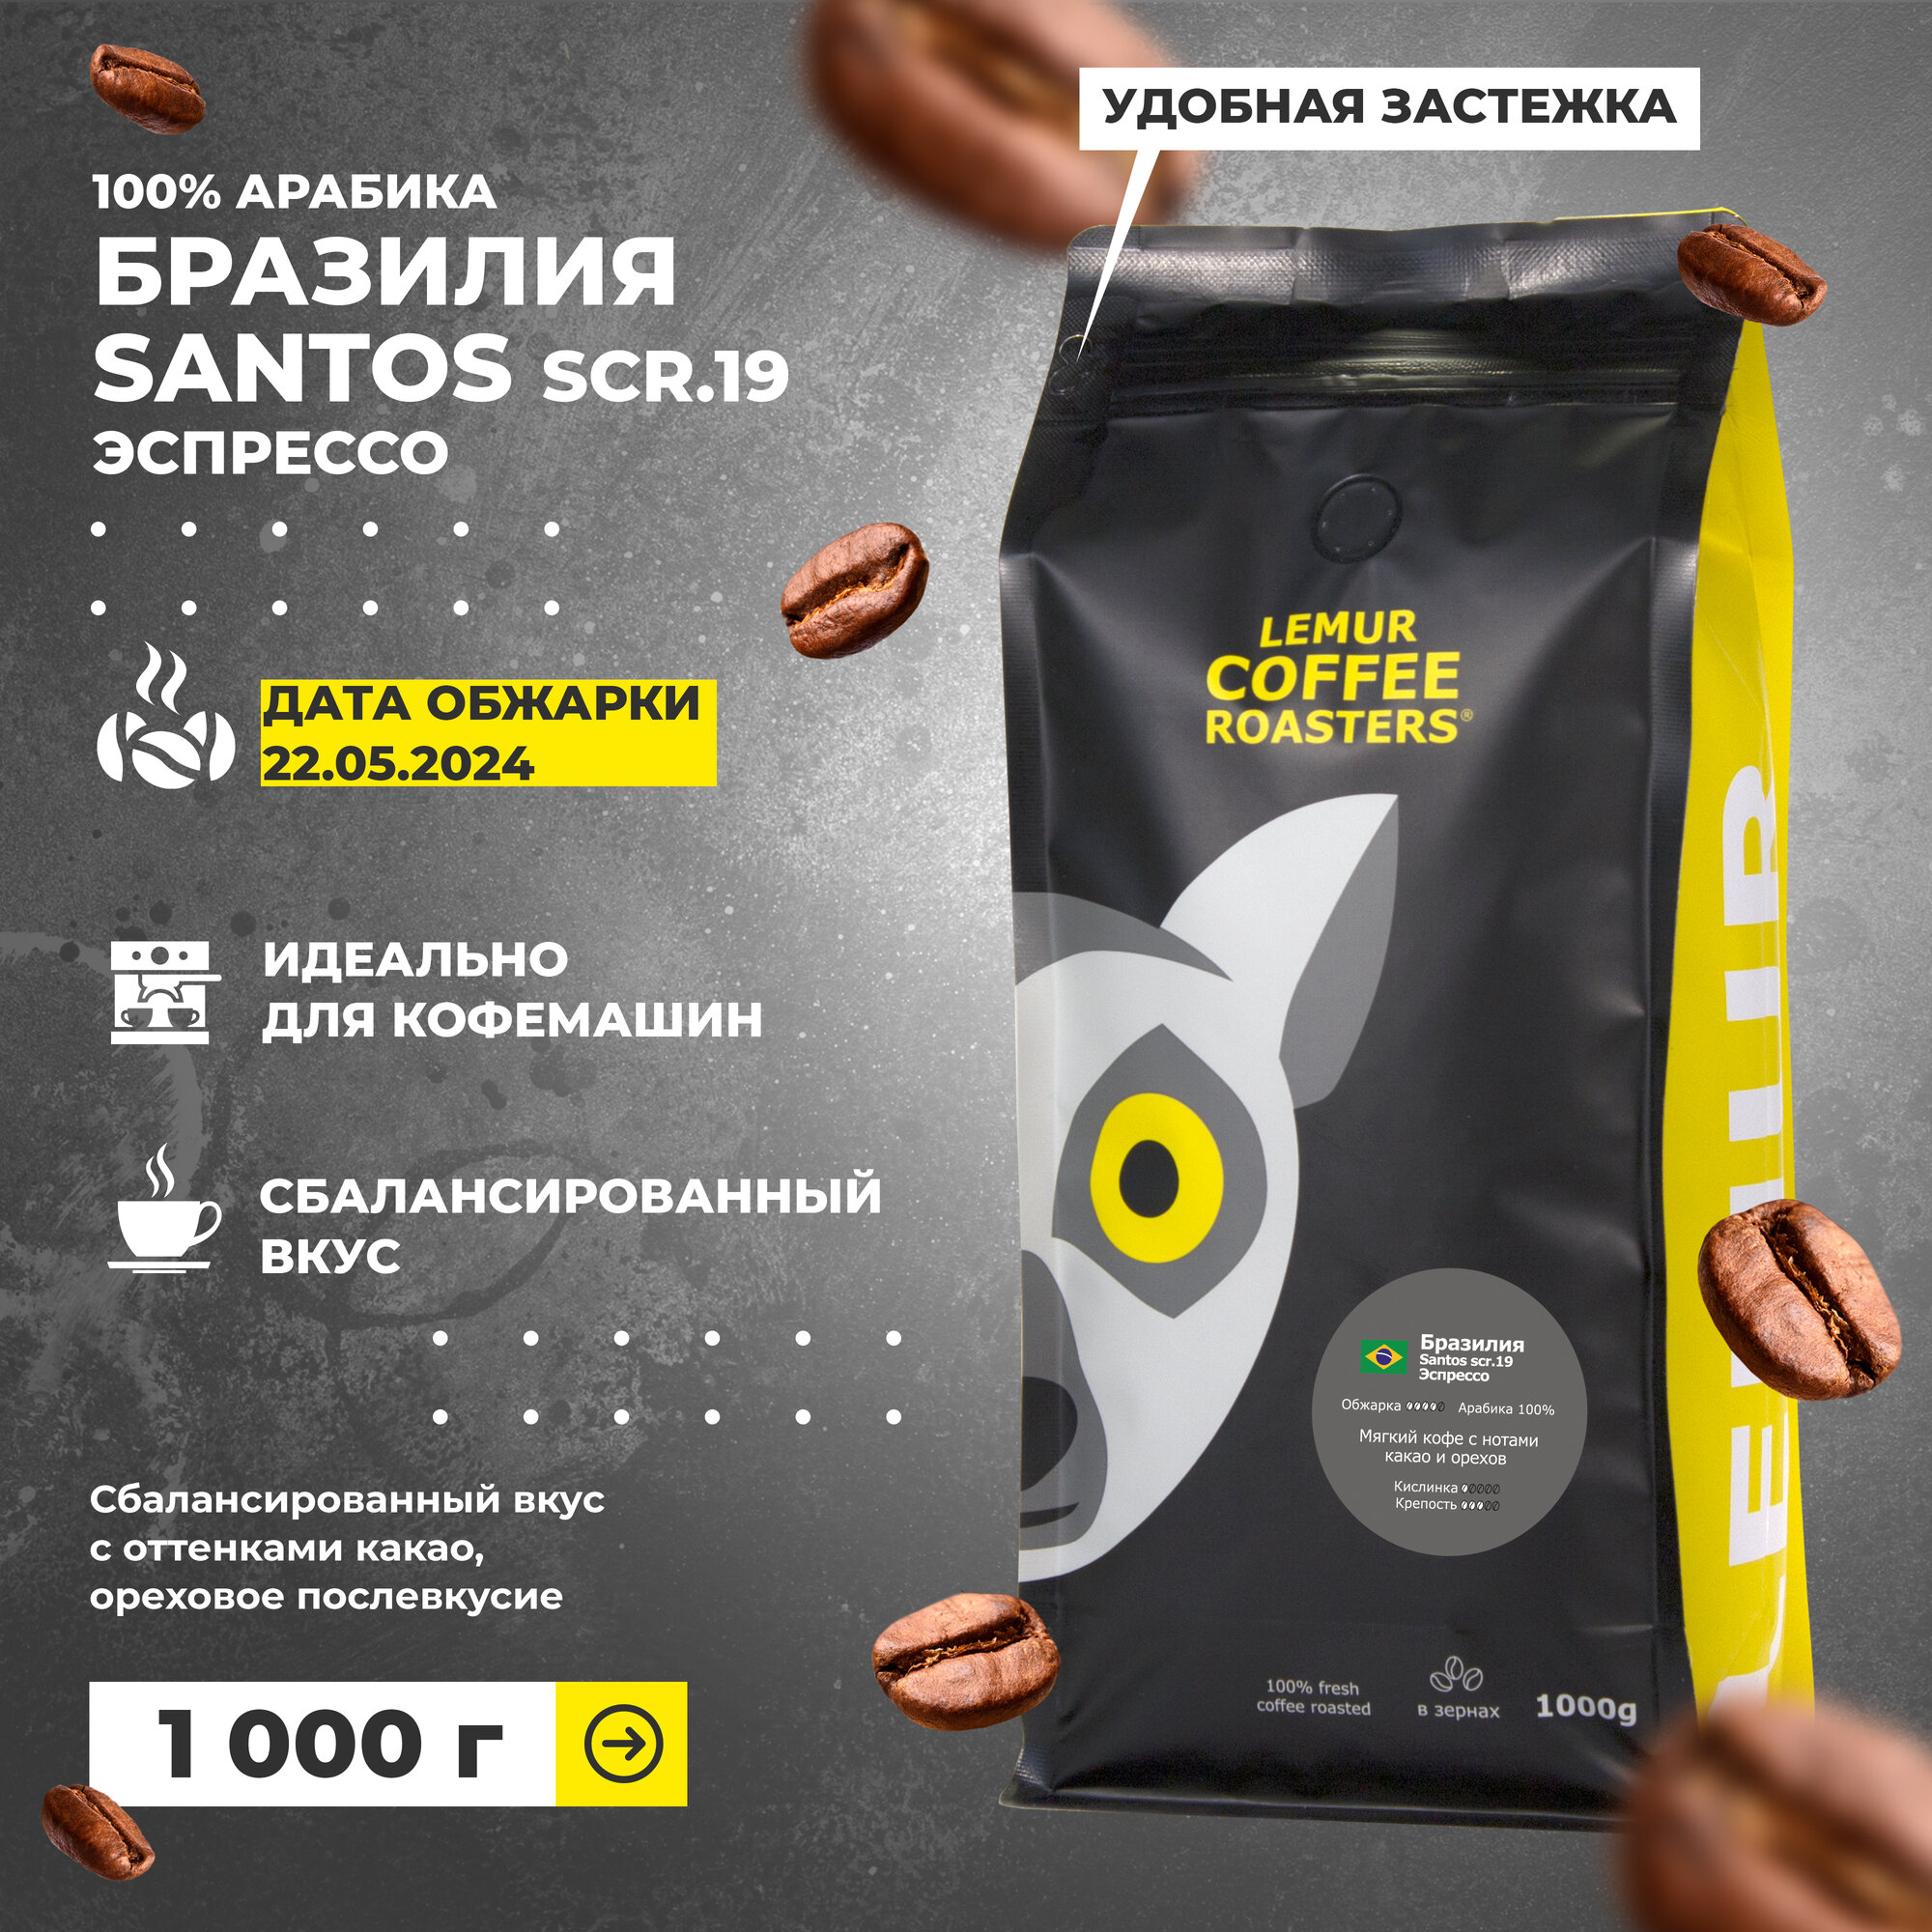 Свежеобжаренный кофе в зернах 1 кг Бразилия Сантос Эспрессо / Santos Lemur Coffee Roasters, дата обжарки 22.05.2024